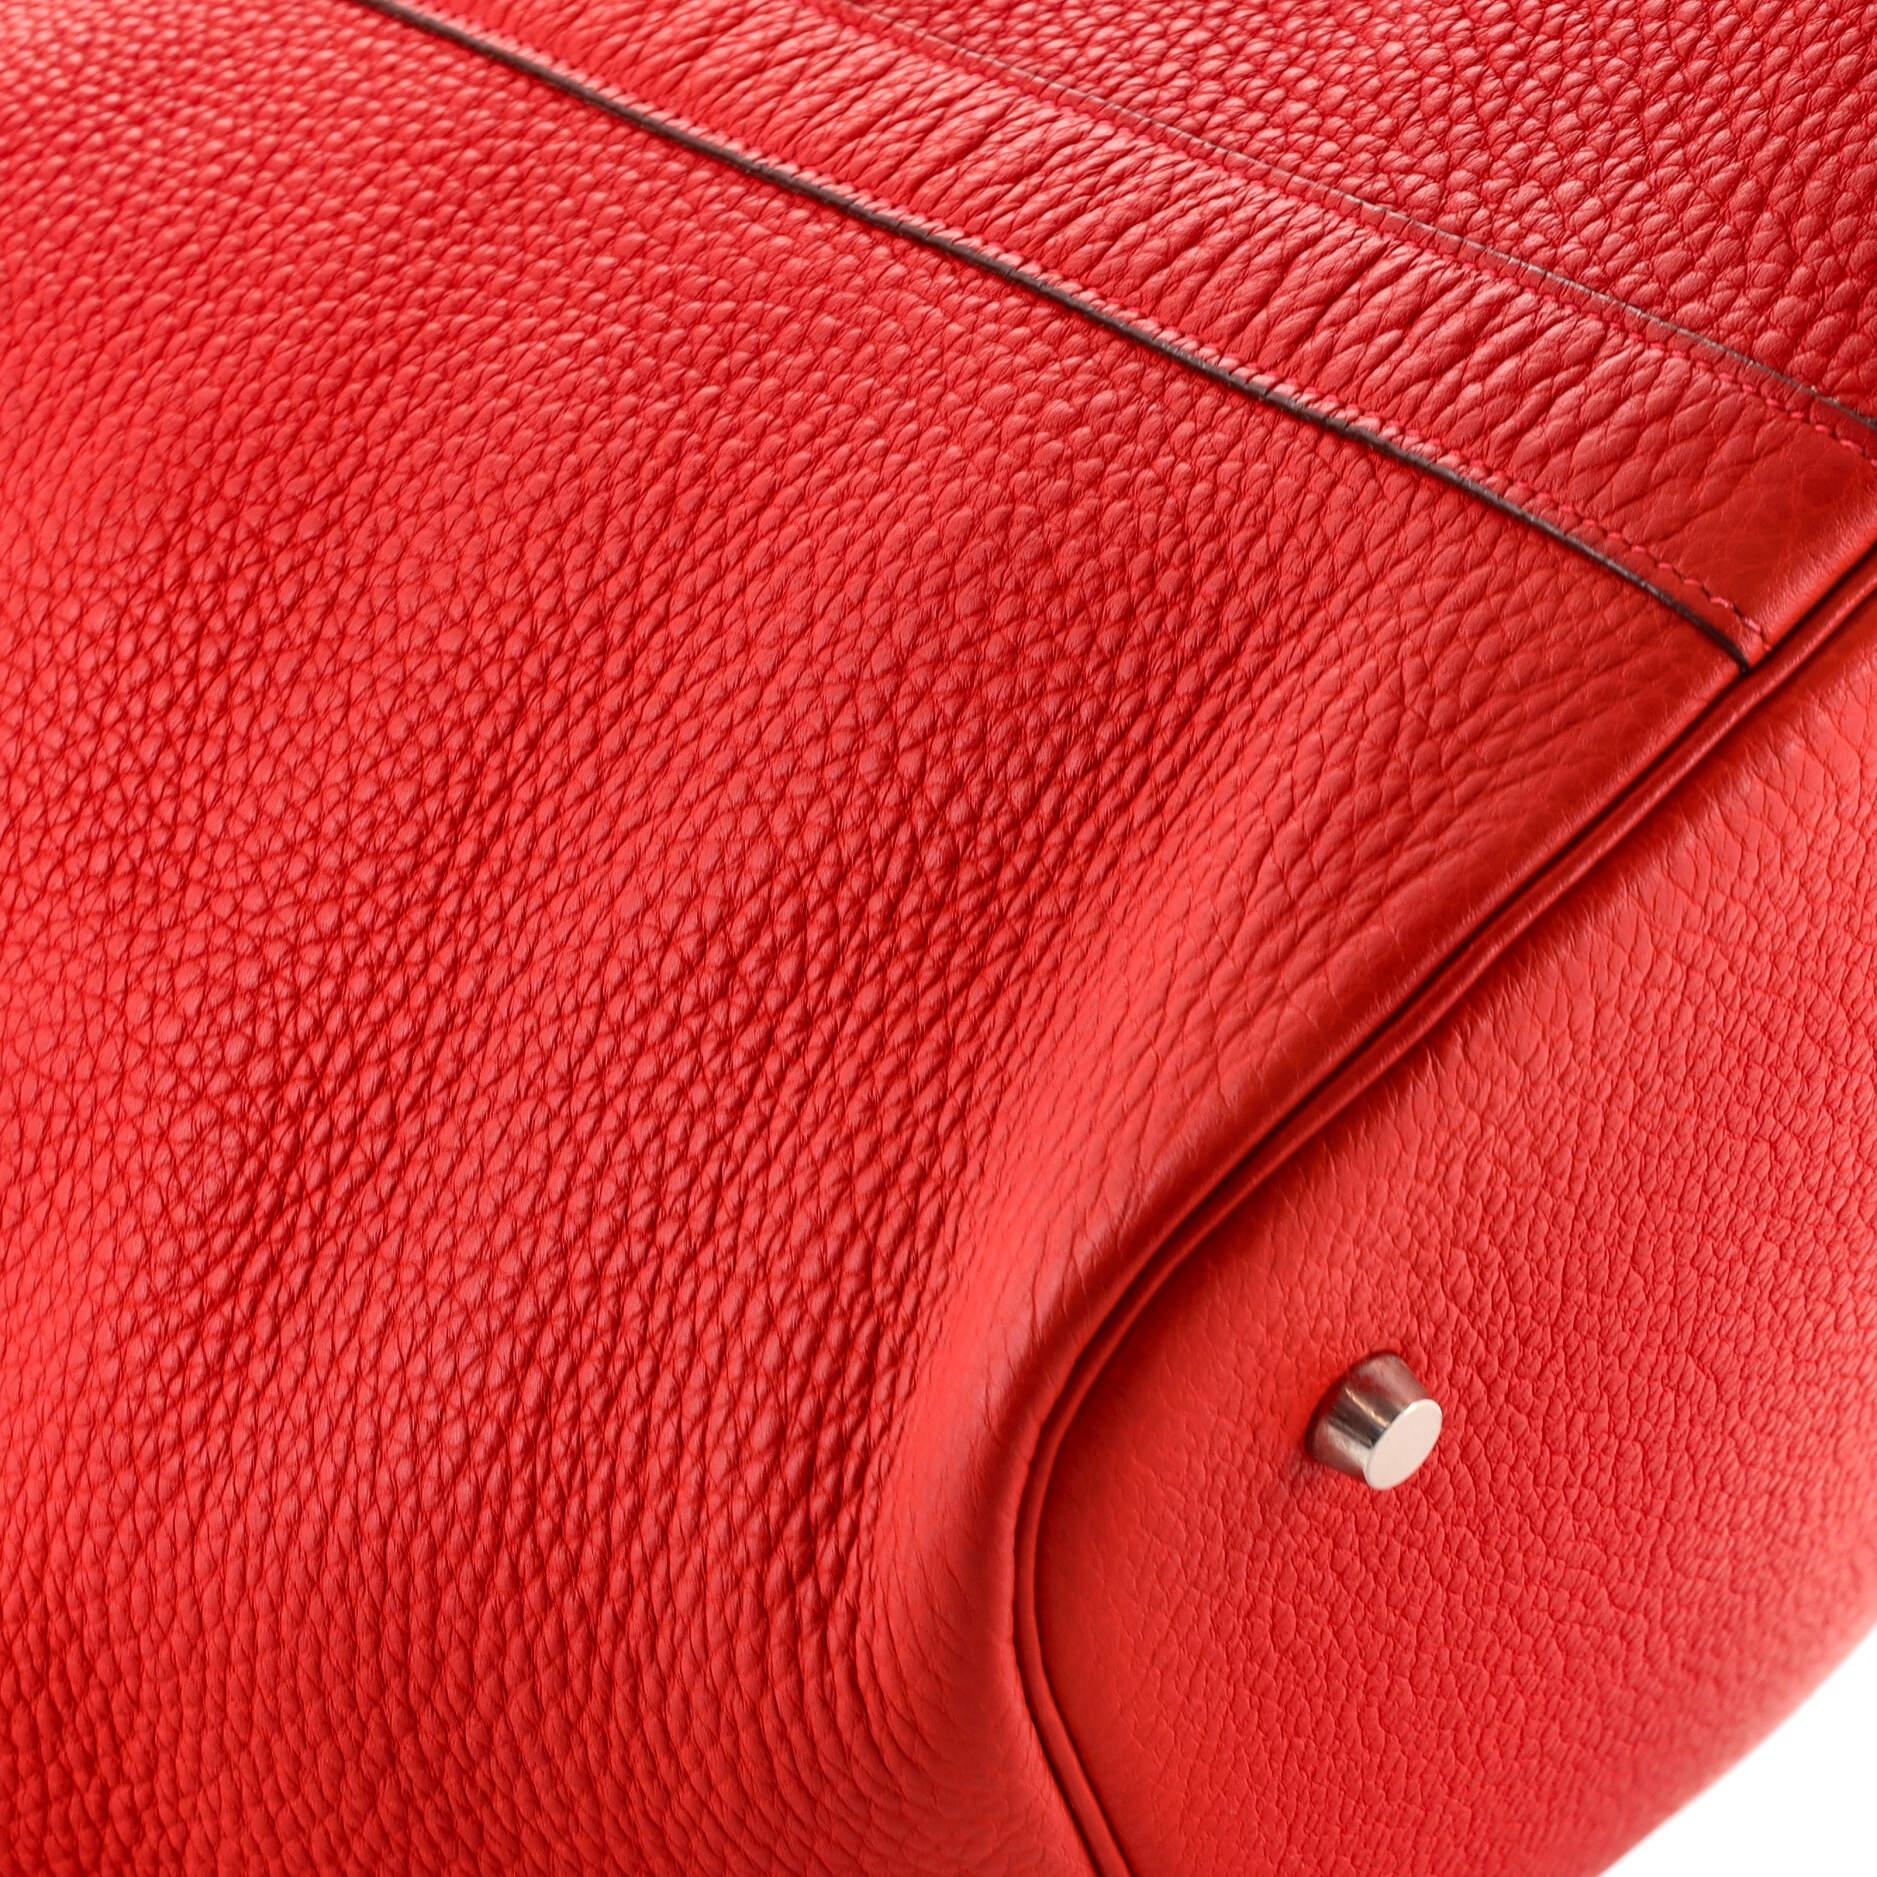 Red Hermes Picotin Bag Clemence TGM